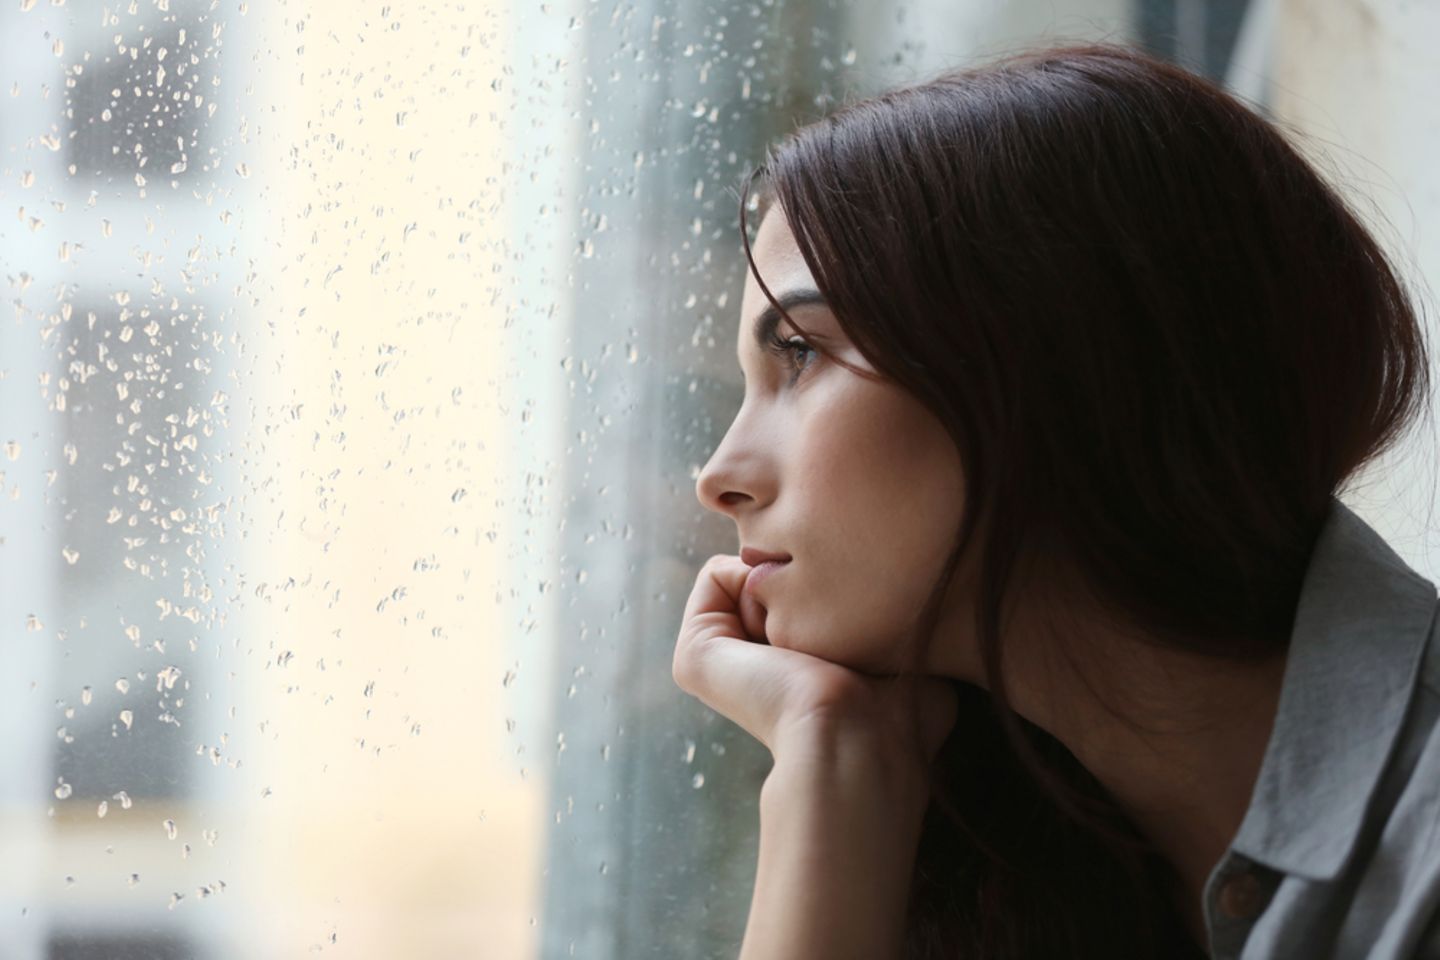 Corona aktuell: Traurige Frau sieht aus dem Fenster